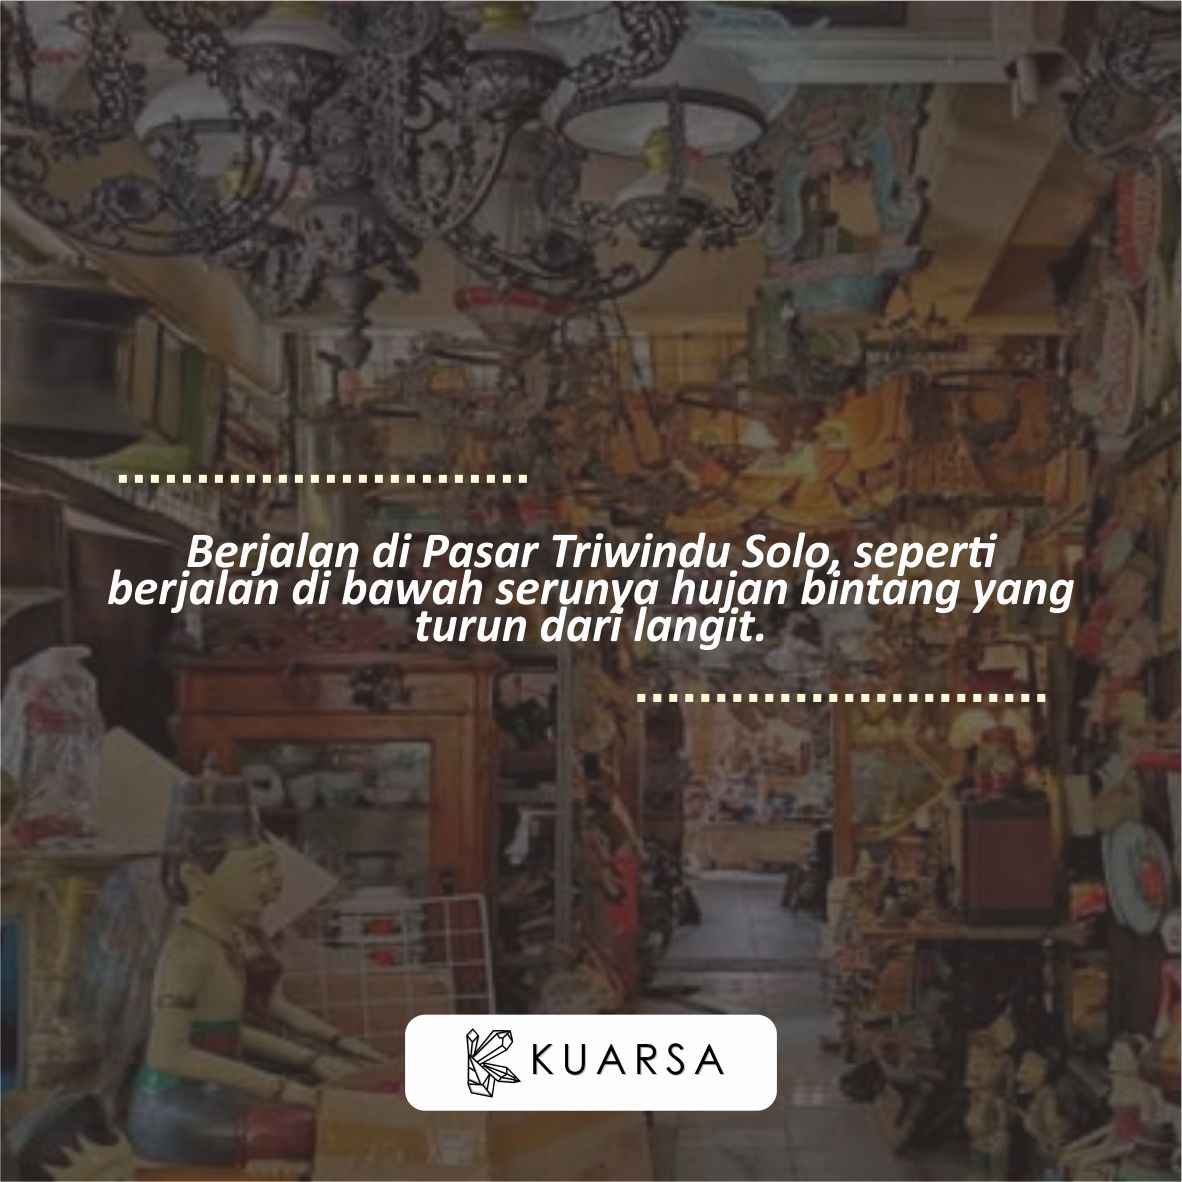 20 Quotes Aesthetic Liburan di Pasar Triwindu Solo, Bisa Untuk Caption Instagram Keren